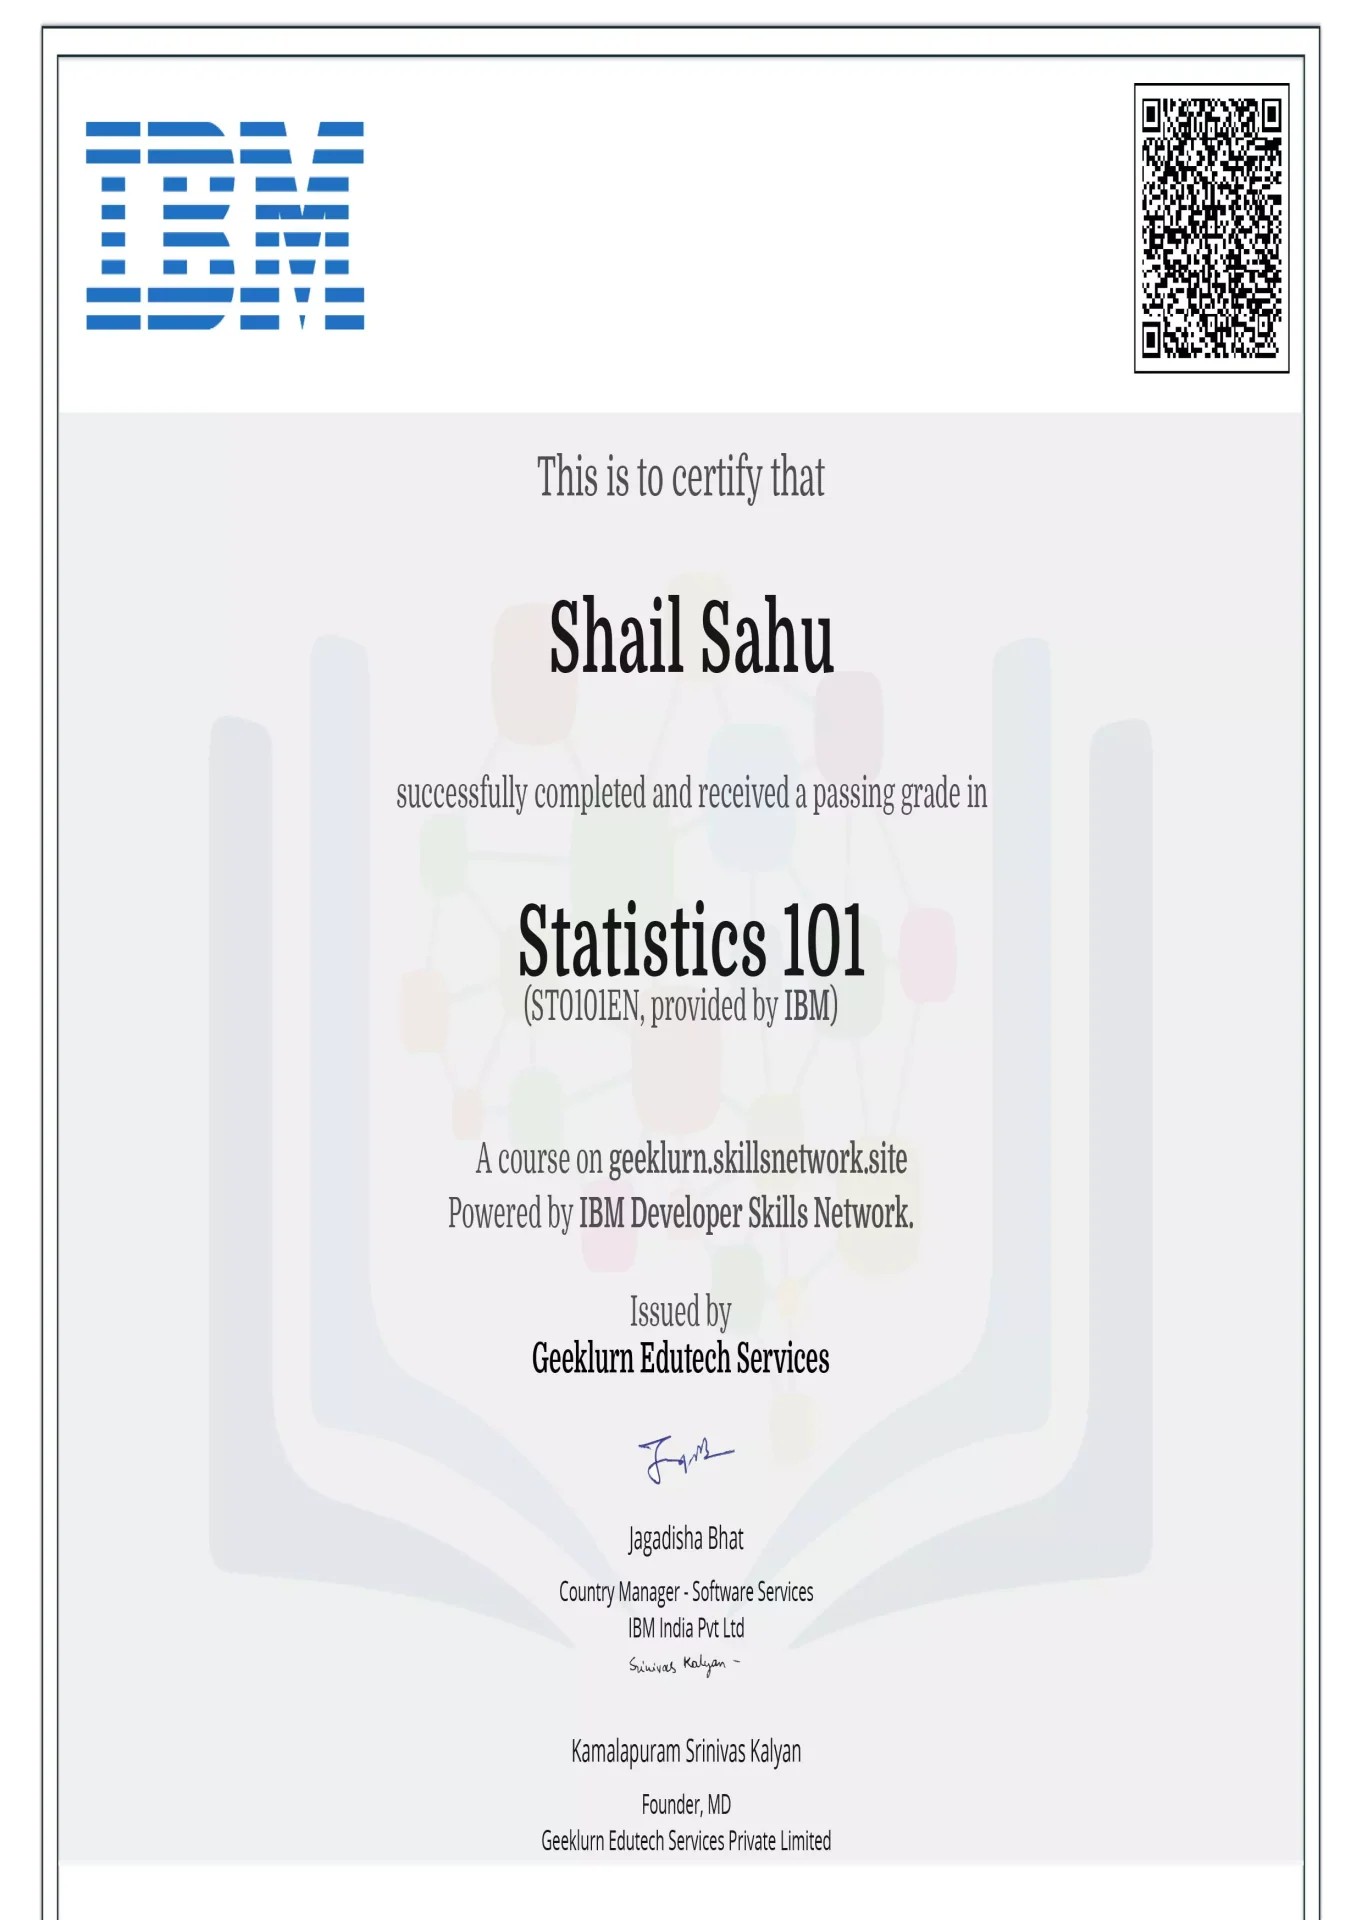 ibm-st0101en-certificate-geeklurn-edutech-services-11